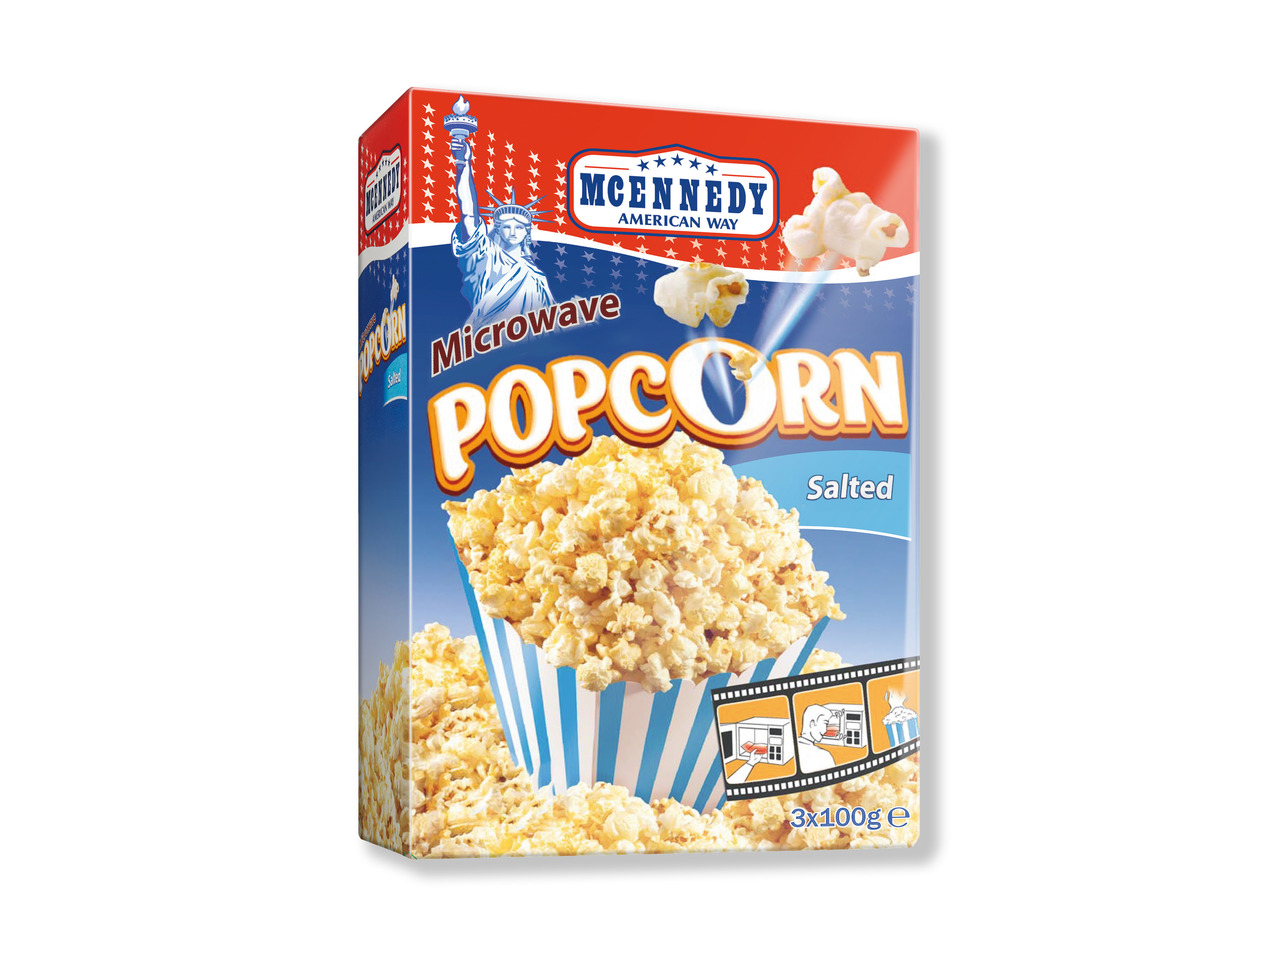 SNACK DAY Popcorn